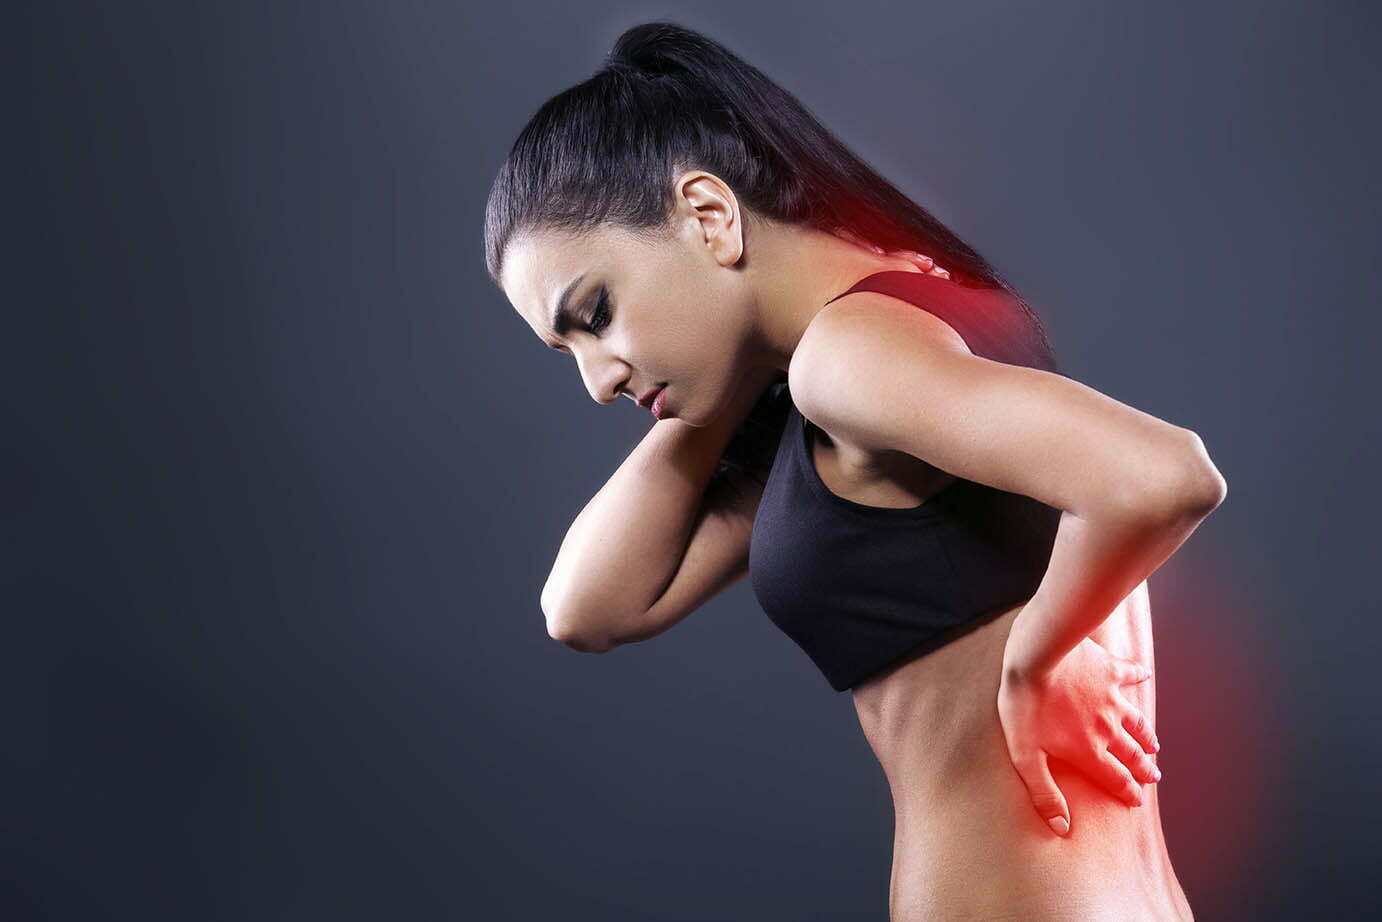 pierderea în greutate provoacă dureri de spate